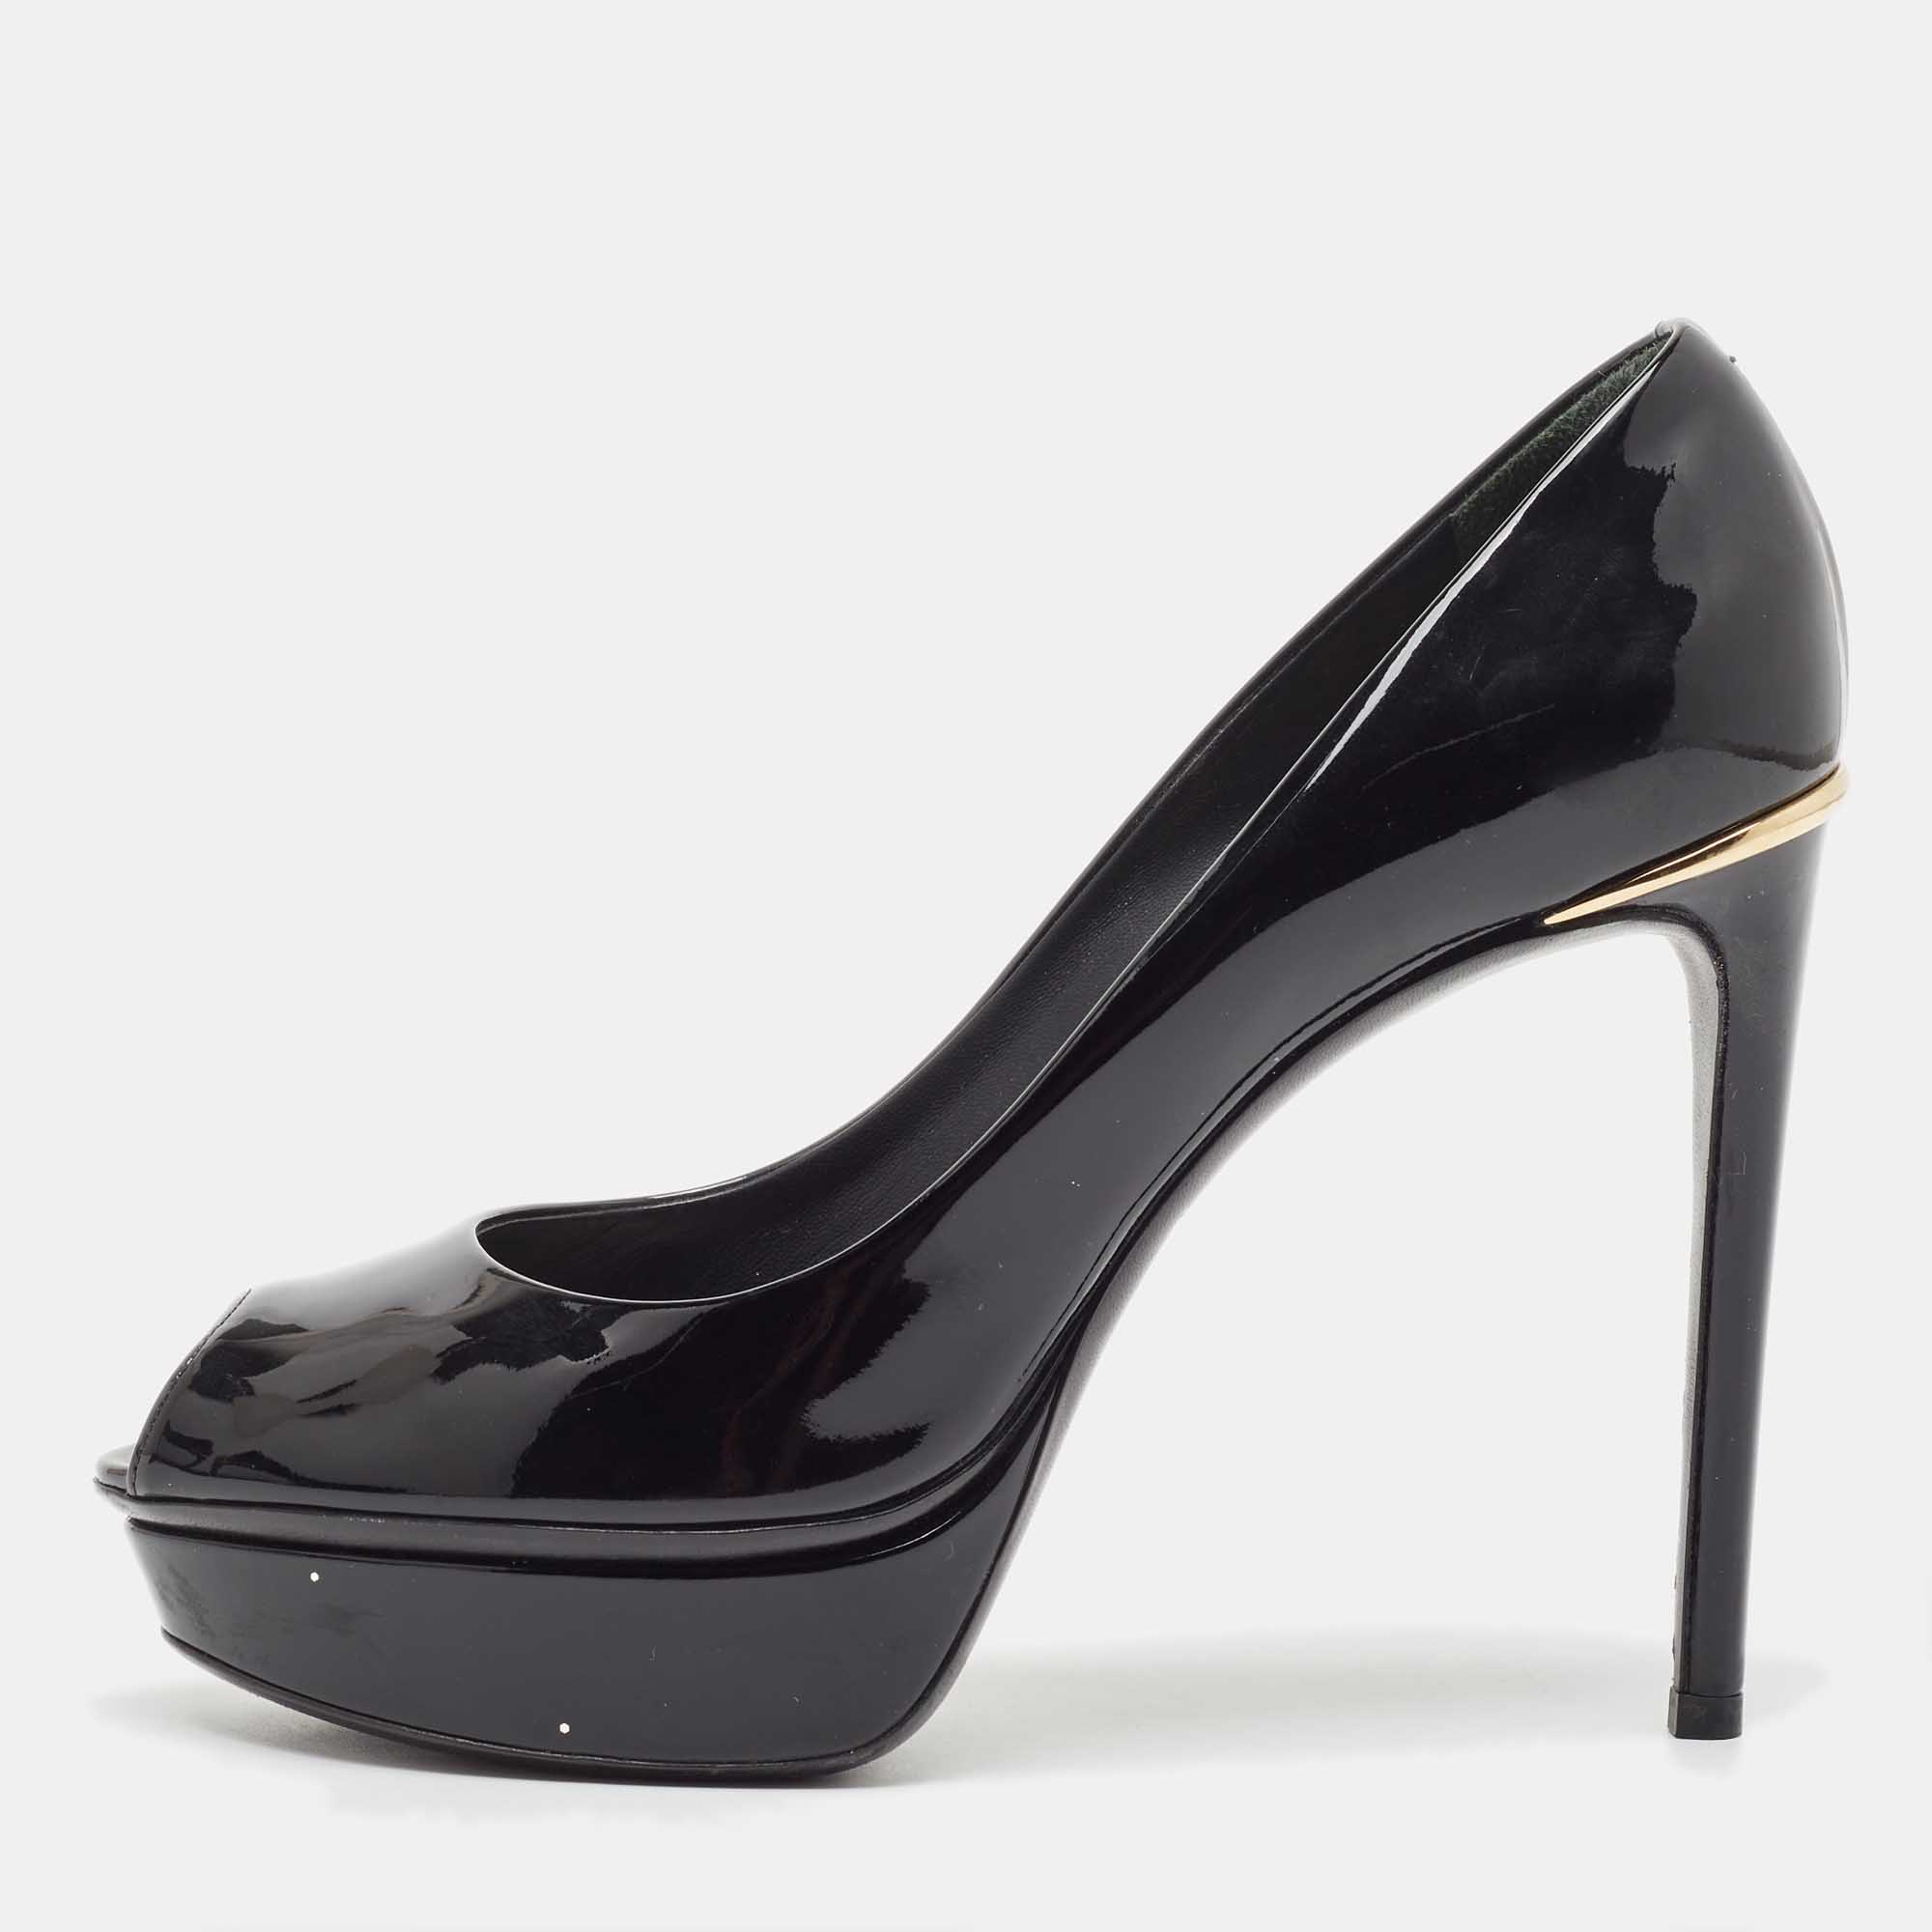 Pre-owned Louis Vuitton Black Patent Leather Peep Toe Platform Pumps Size 36.5